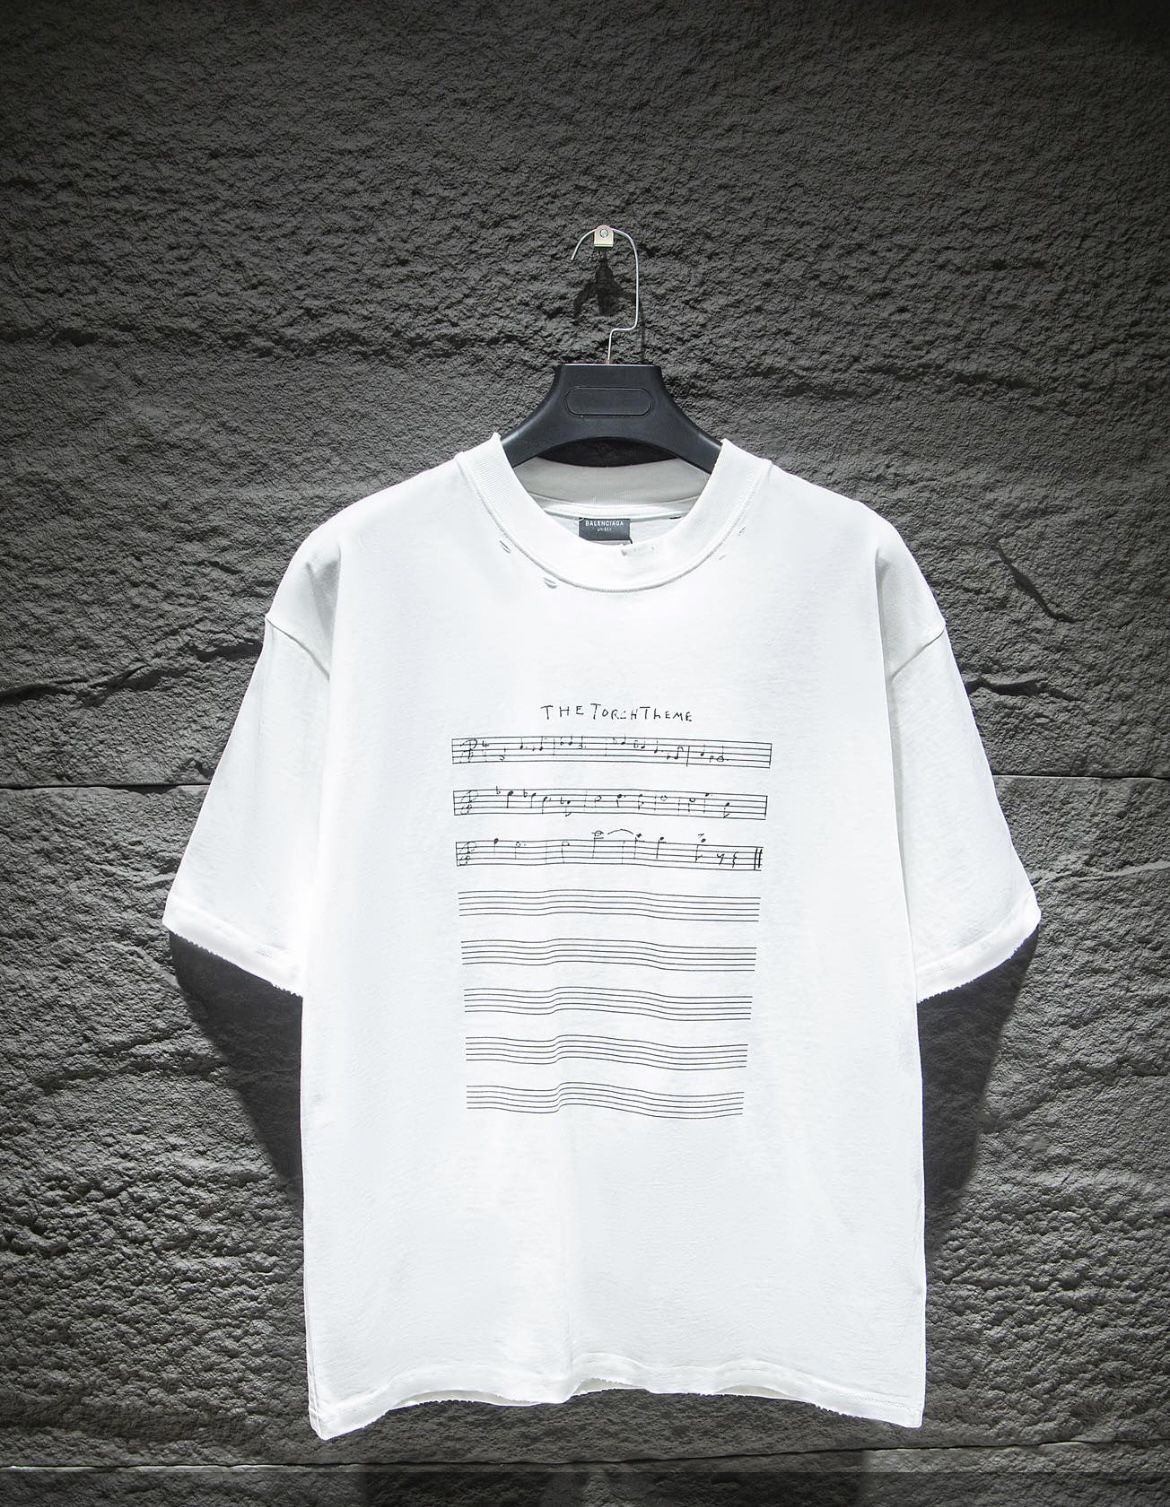 Balenciaga “The Torch Theme” T-Shirt